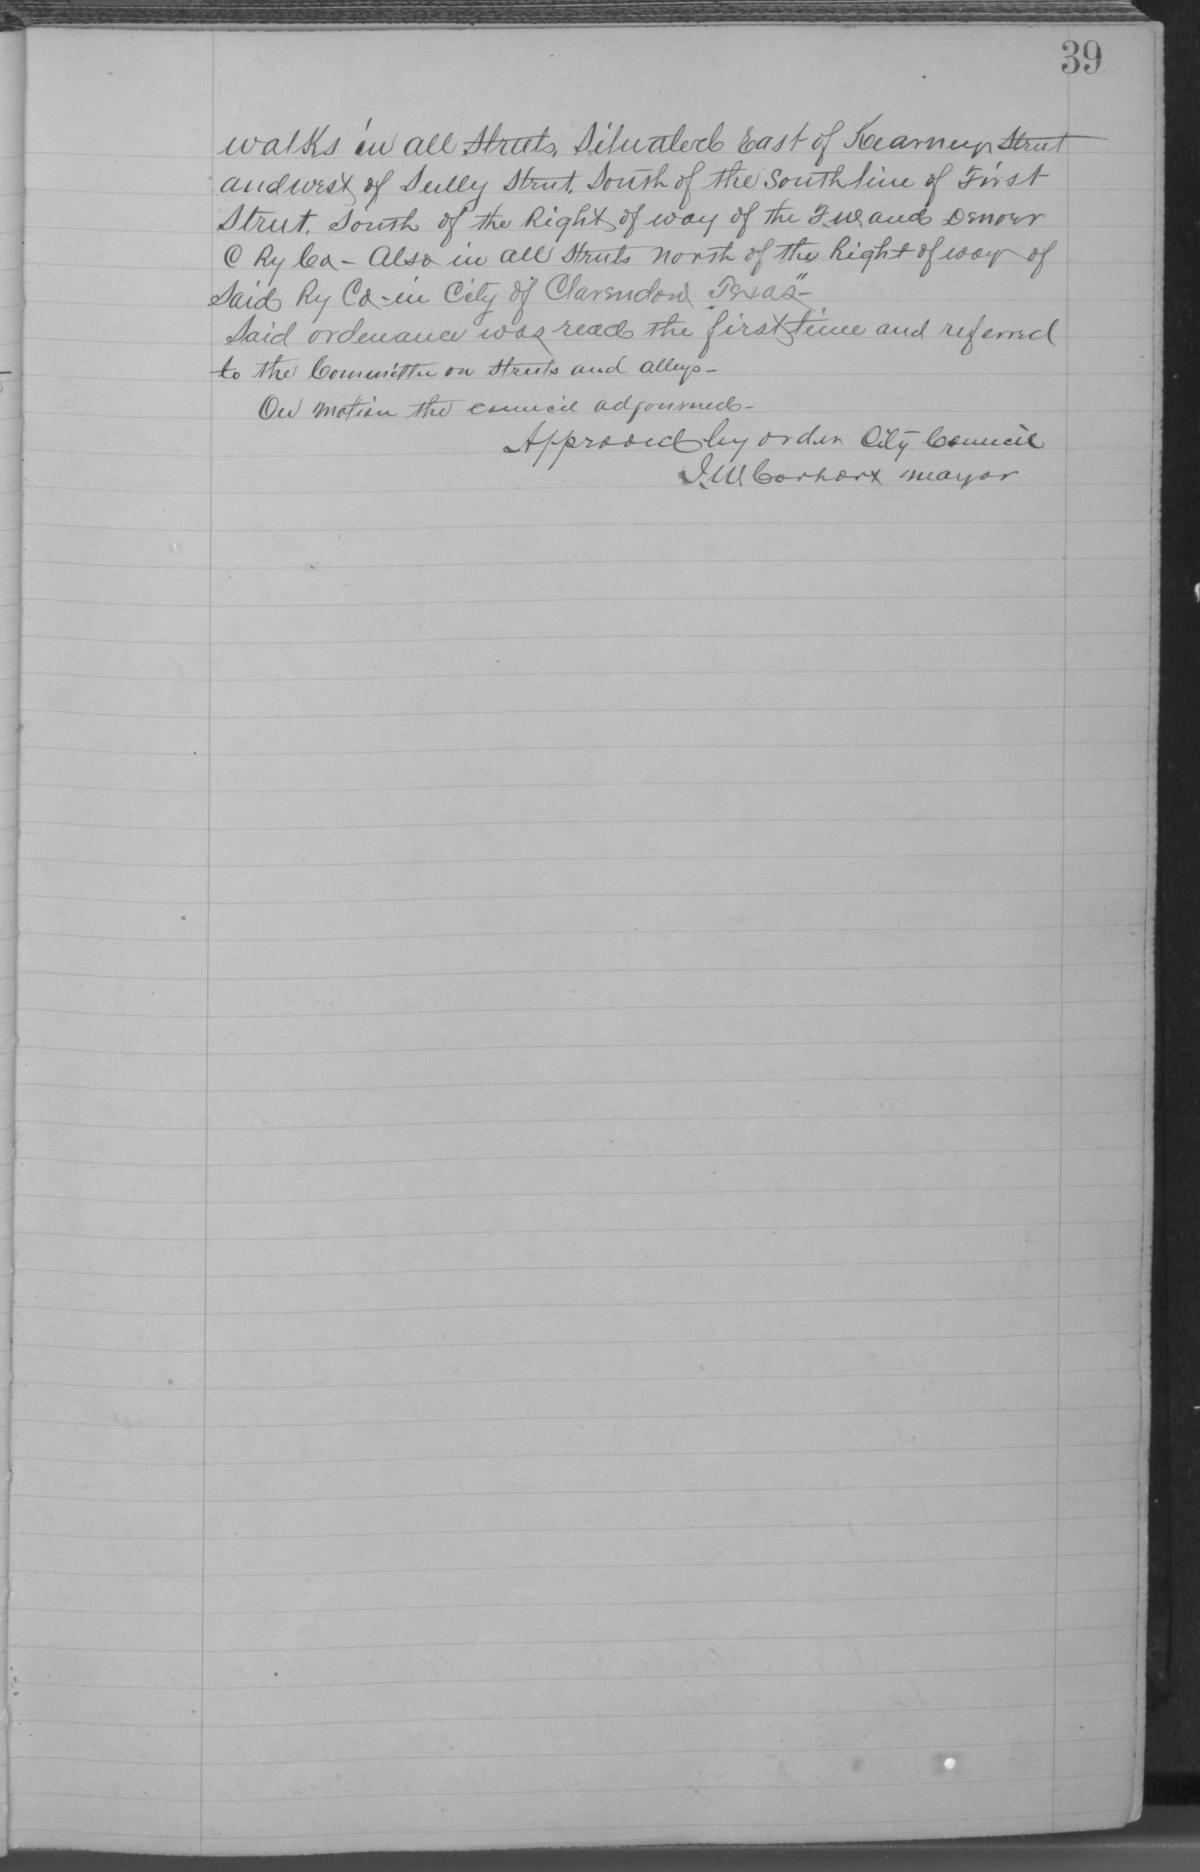 [City of Clarendon Ledger: Minutes for September 10, 1901- April 19, 1917]
                                                
                                                    39
                                                